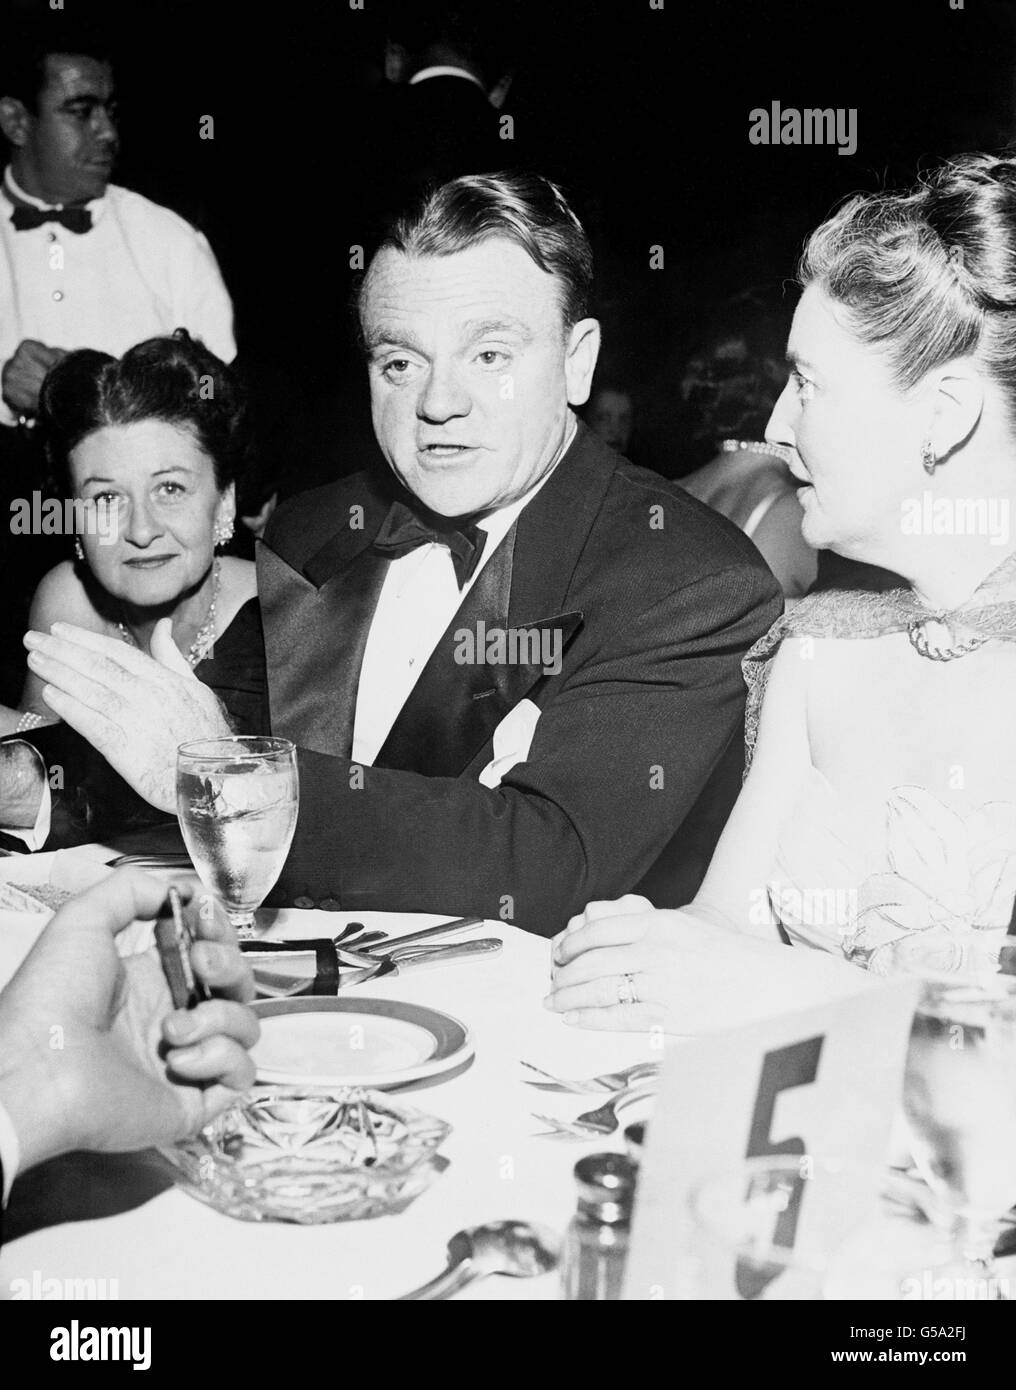 Der altgediente amerikanische Film-Tough-Guy James Cagney auf einer Hollywood-Party. Links seine Frau Frances Vernon, rechts Eloise O'Brien, die Frau des Filmschauspielers Pat O'Brien. Stockfoto